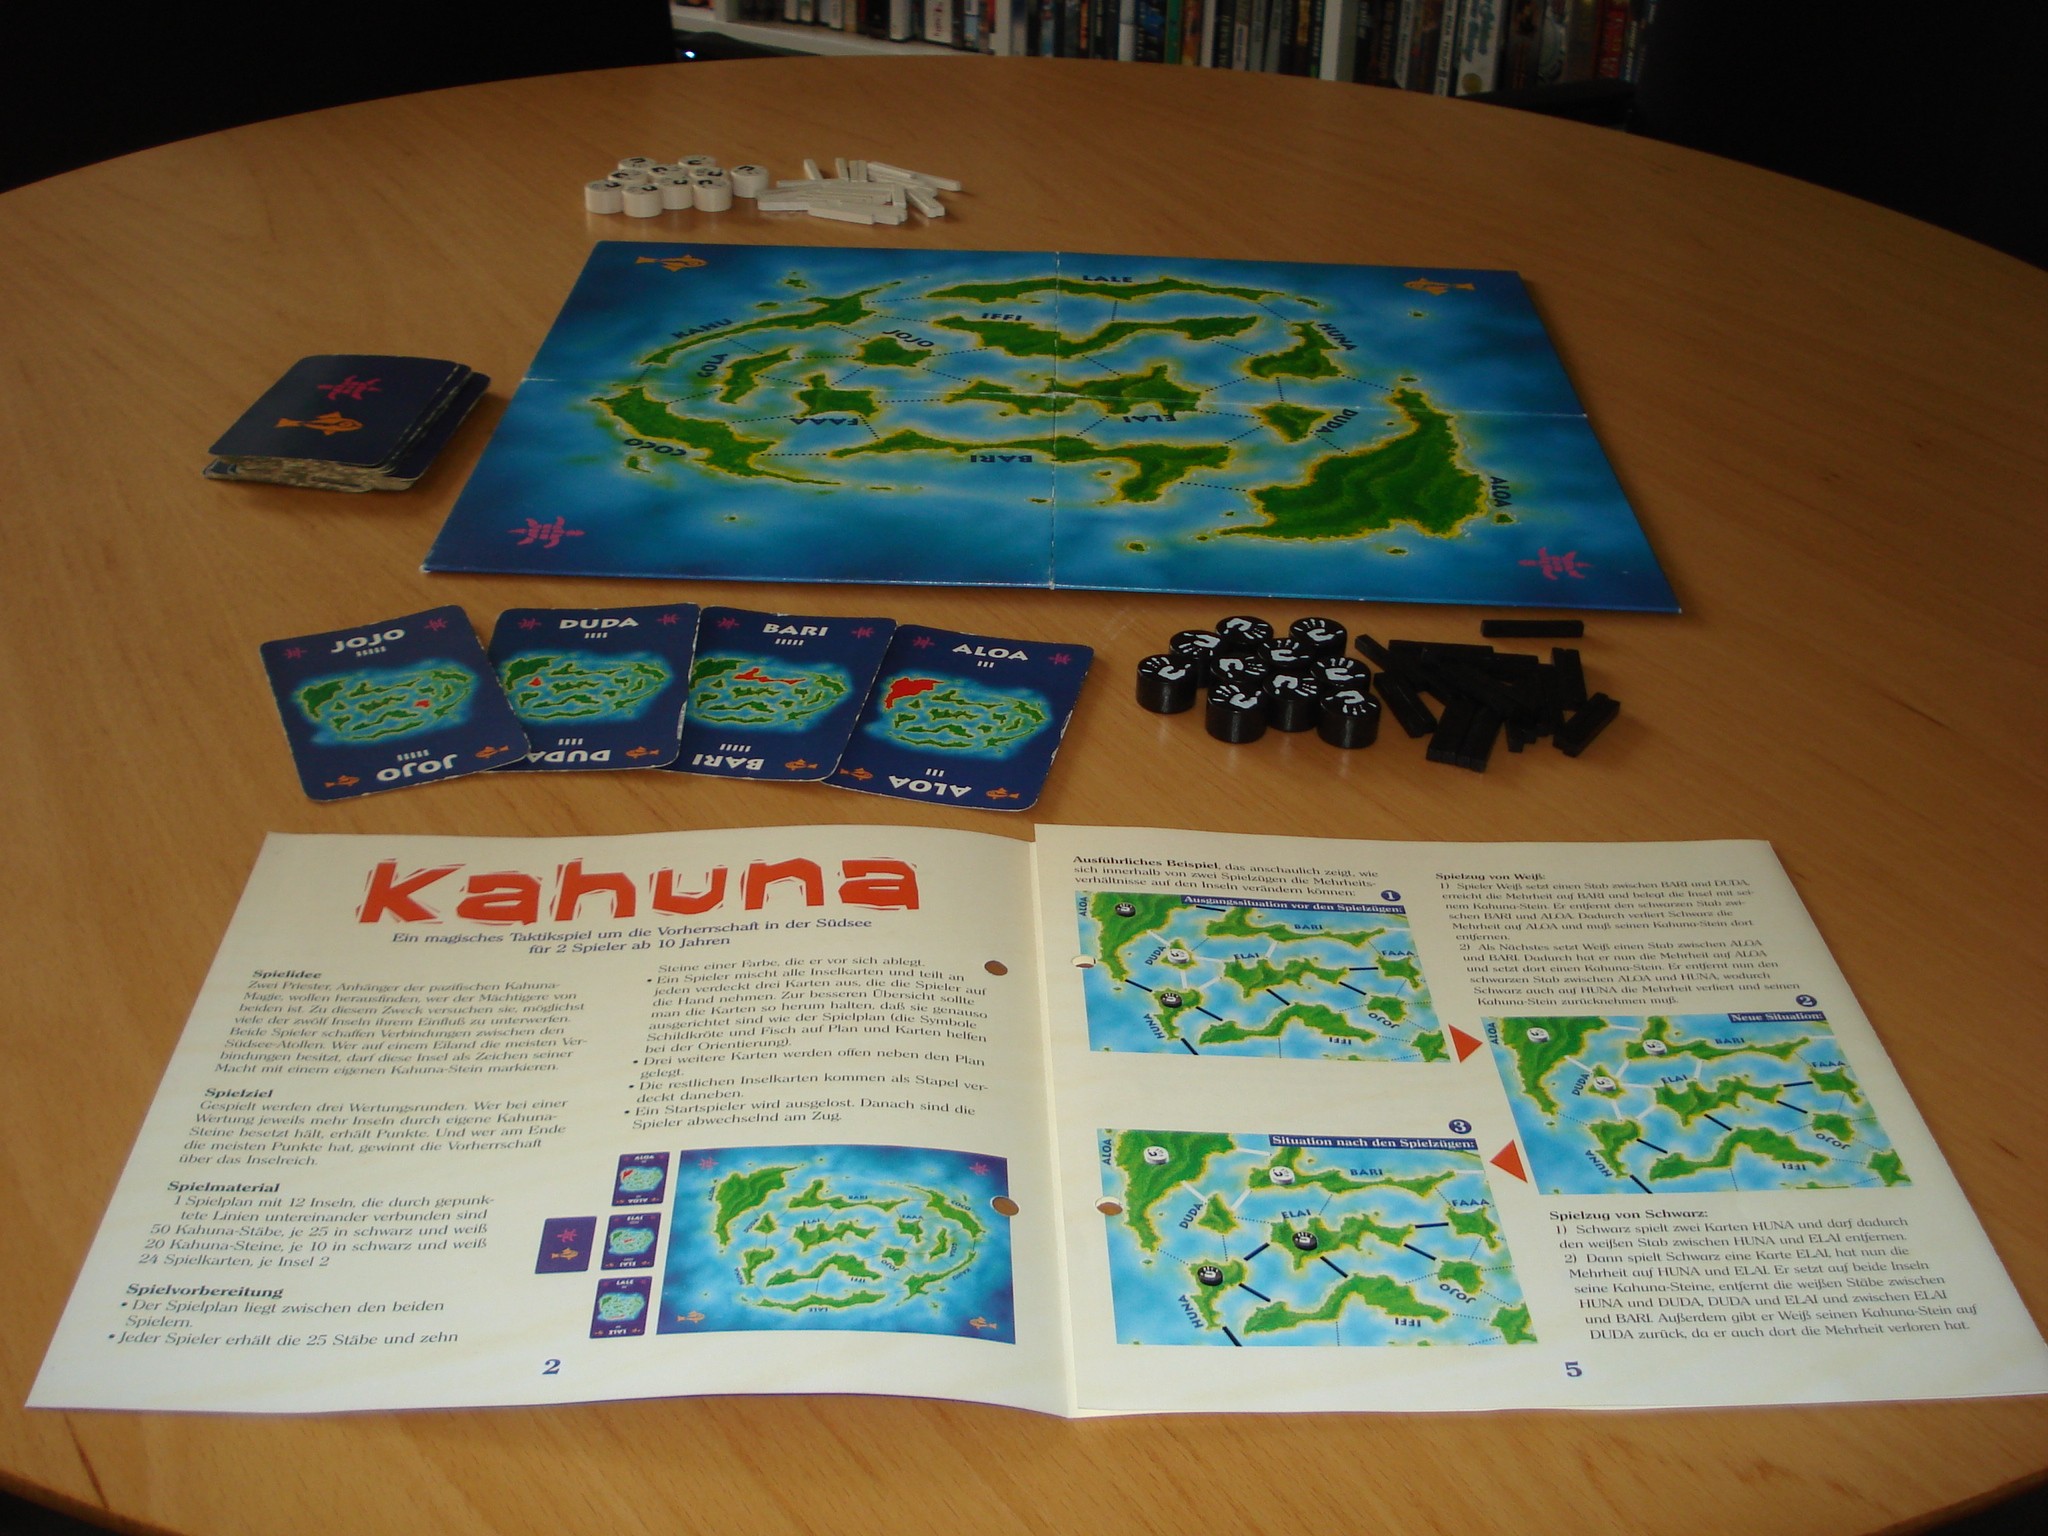 Kahuna erschien bereits 1997. Das Taktikspiel fr zwei Personen ist bei Kosmos erschienen.